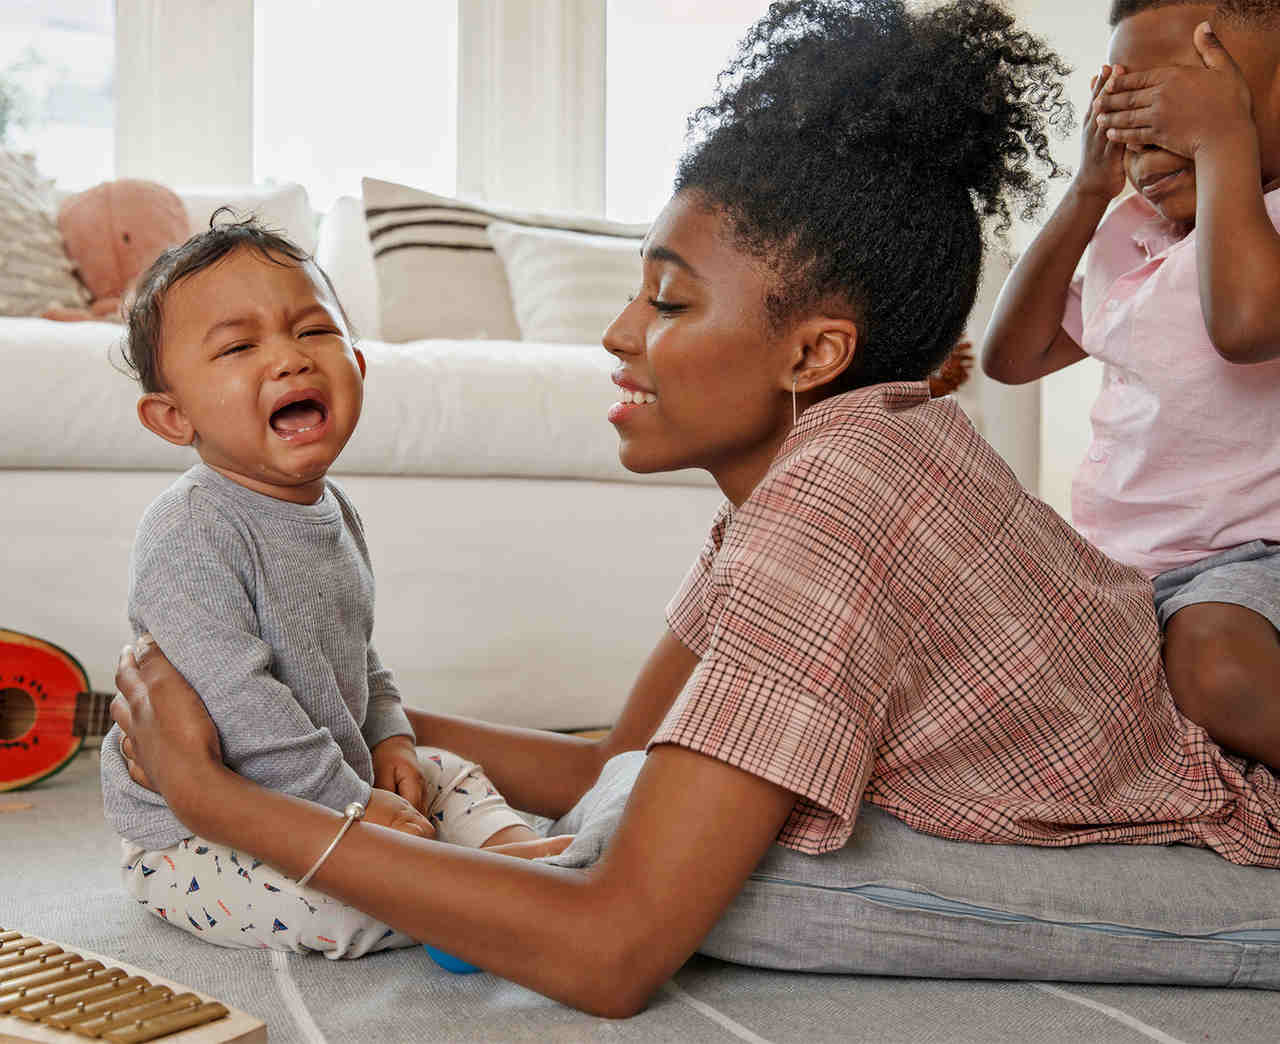 choro do bebe como identificar - Choro do bebê: Veja como identificar as causas e como acalmá-lo